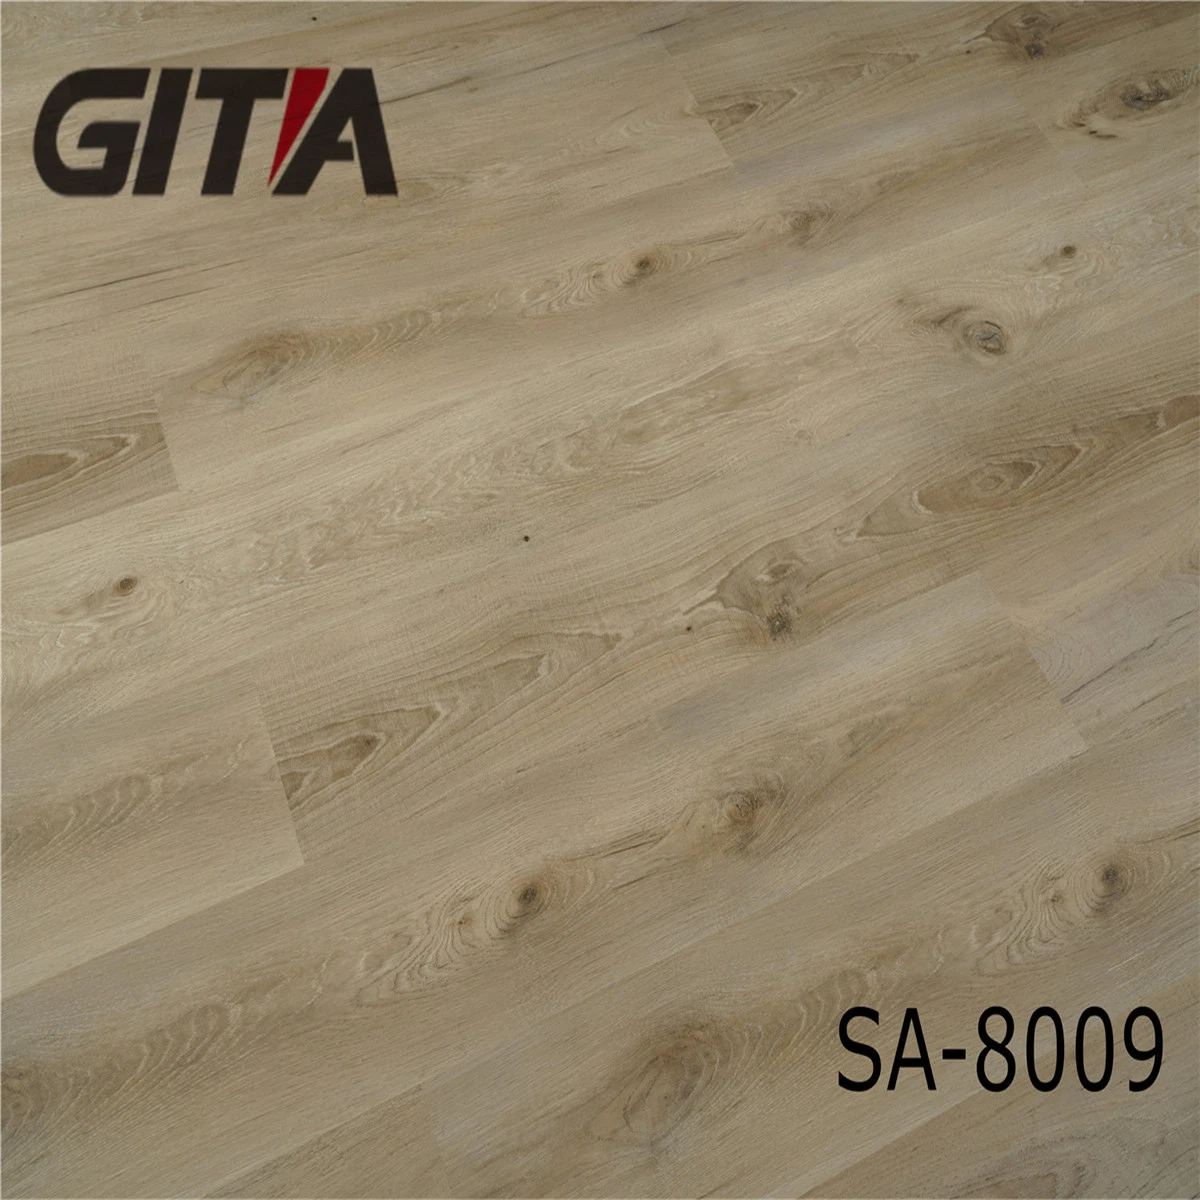 شركة Gitia التجارية باستخدام 4 مم من بلانك من الفينيل سهل التنظيف مع النقر فوق الجلبين الأرضية